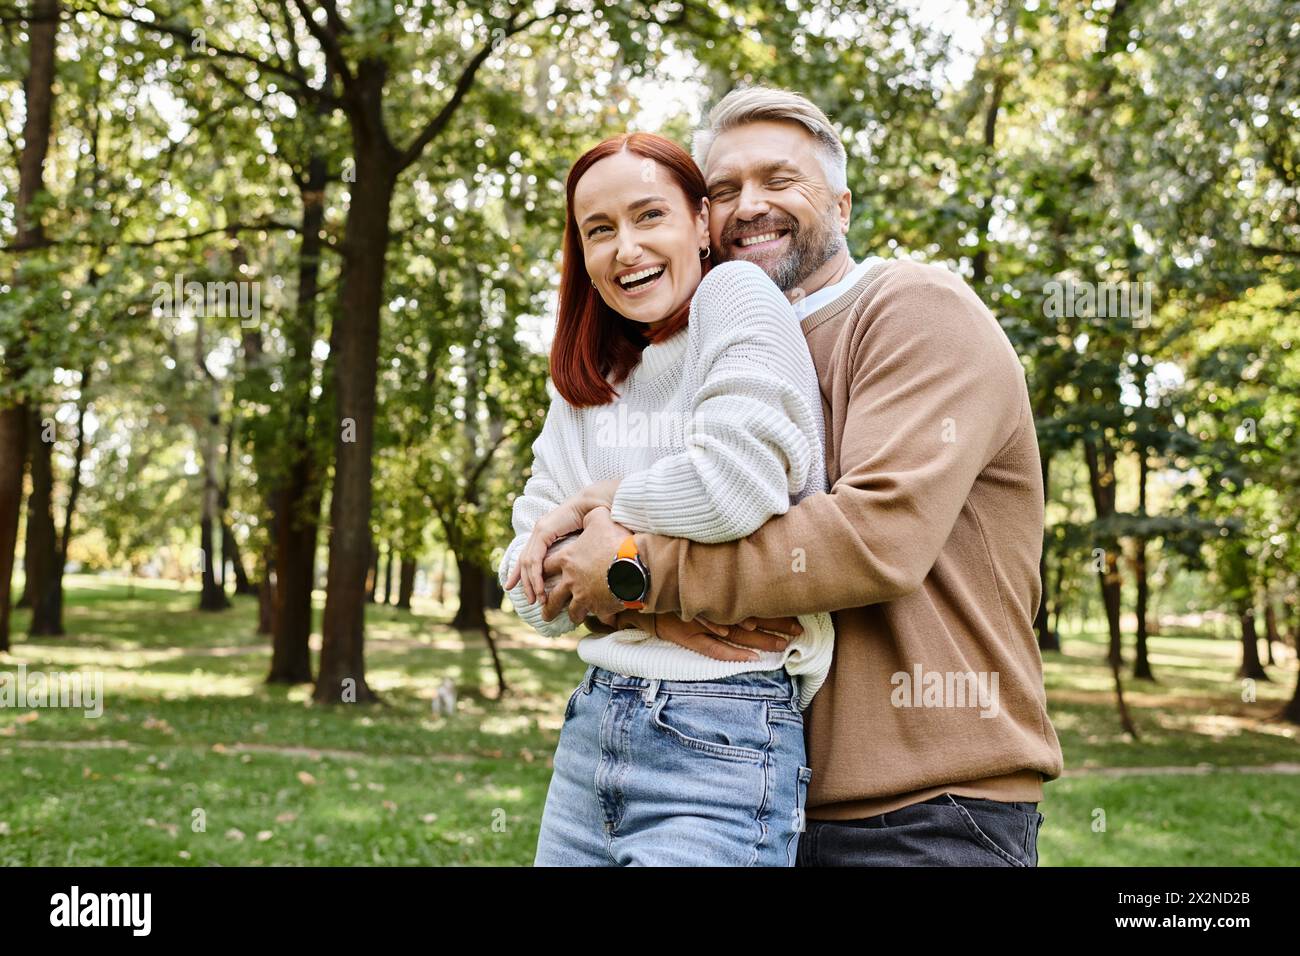 Ein Mann und eine Frau teilen eine warme Umarmung in der ruhigen Umgebung eines Parks. Stockfoto